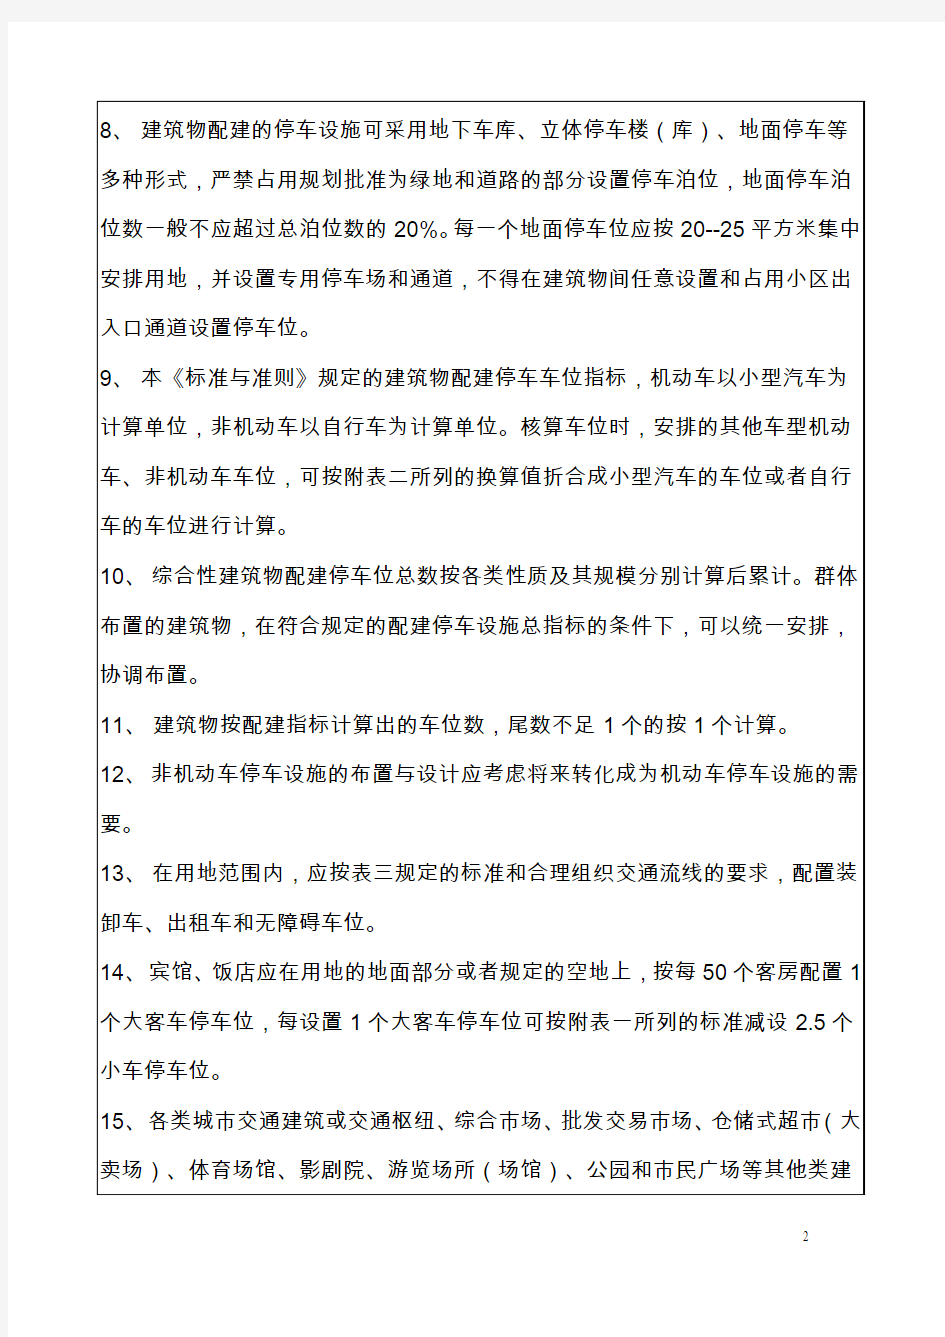 南京市建筑物配建停车设施设置标准与准则(新)